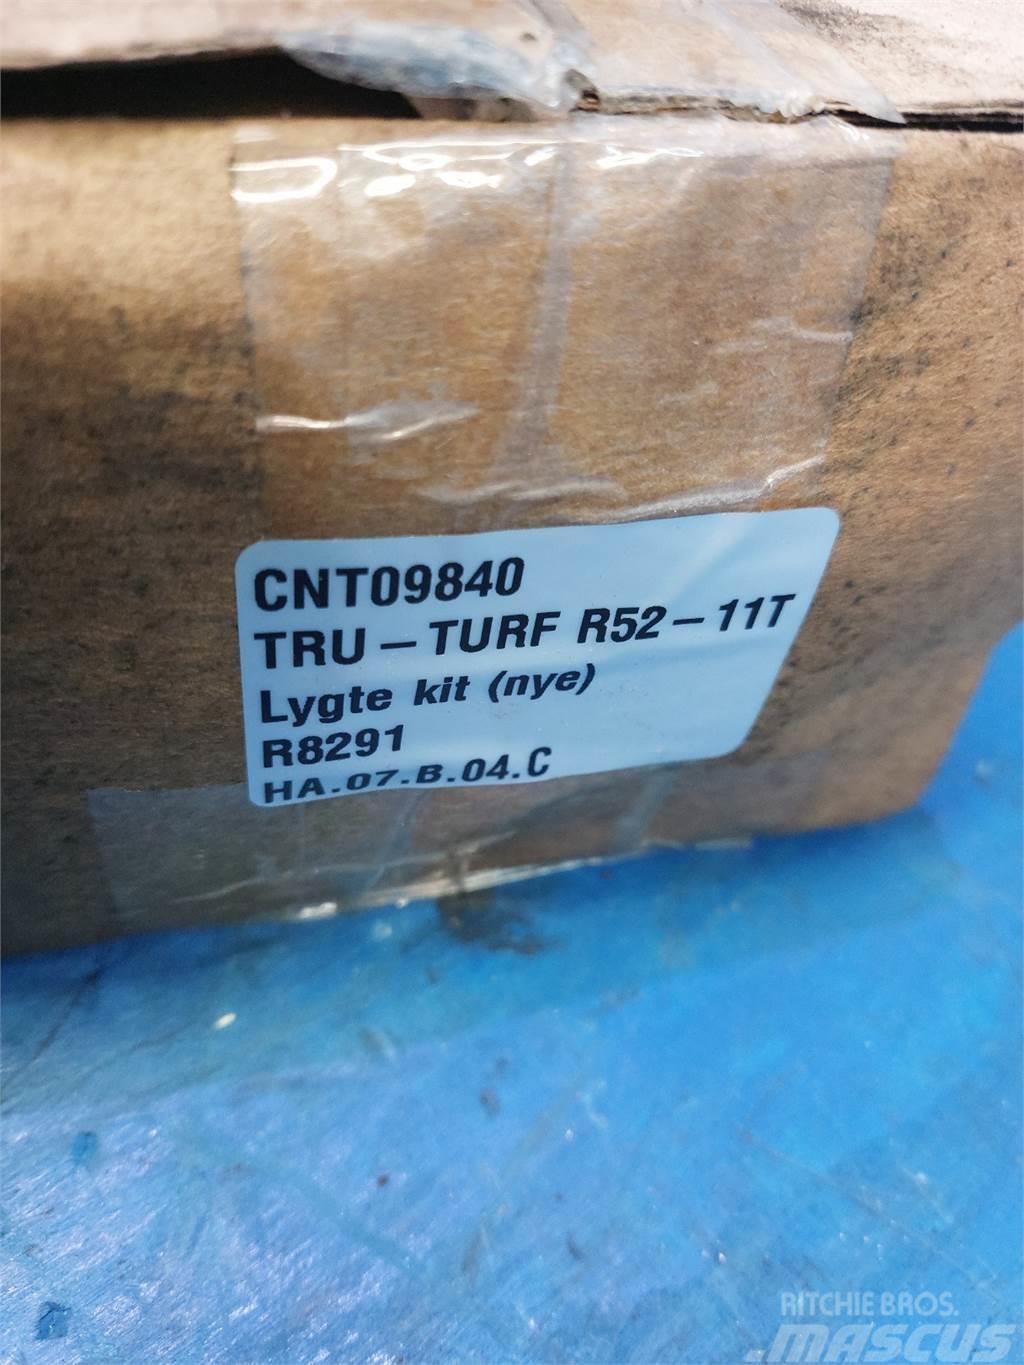  Tru-Turf R52 Annet